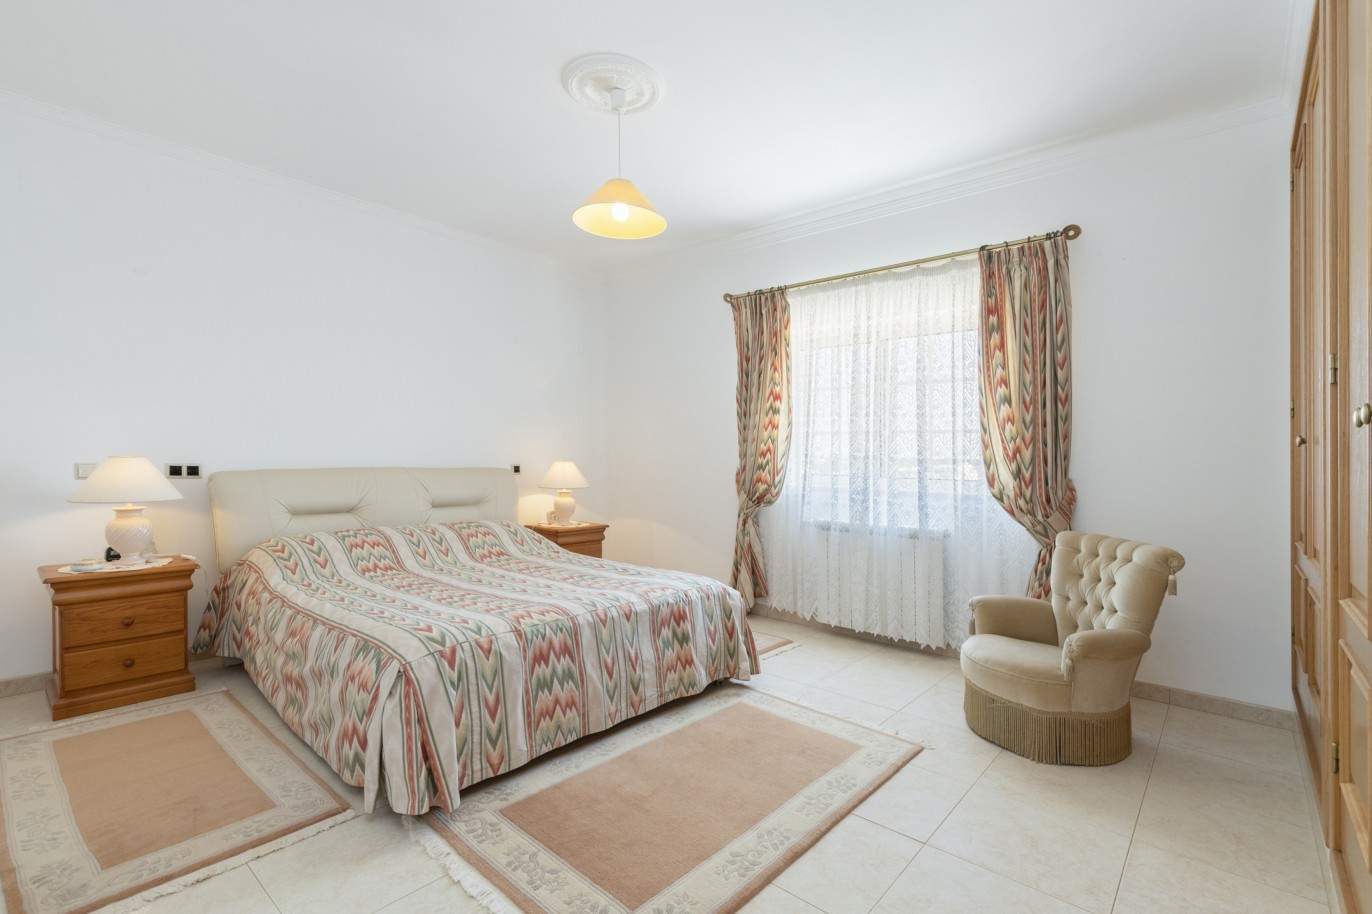 4 Bedroom Villa, for sale, in Loulé, Algarve_198234